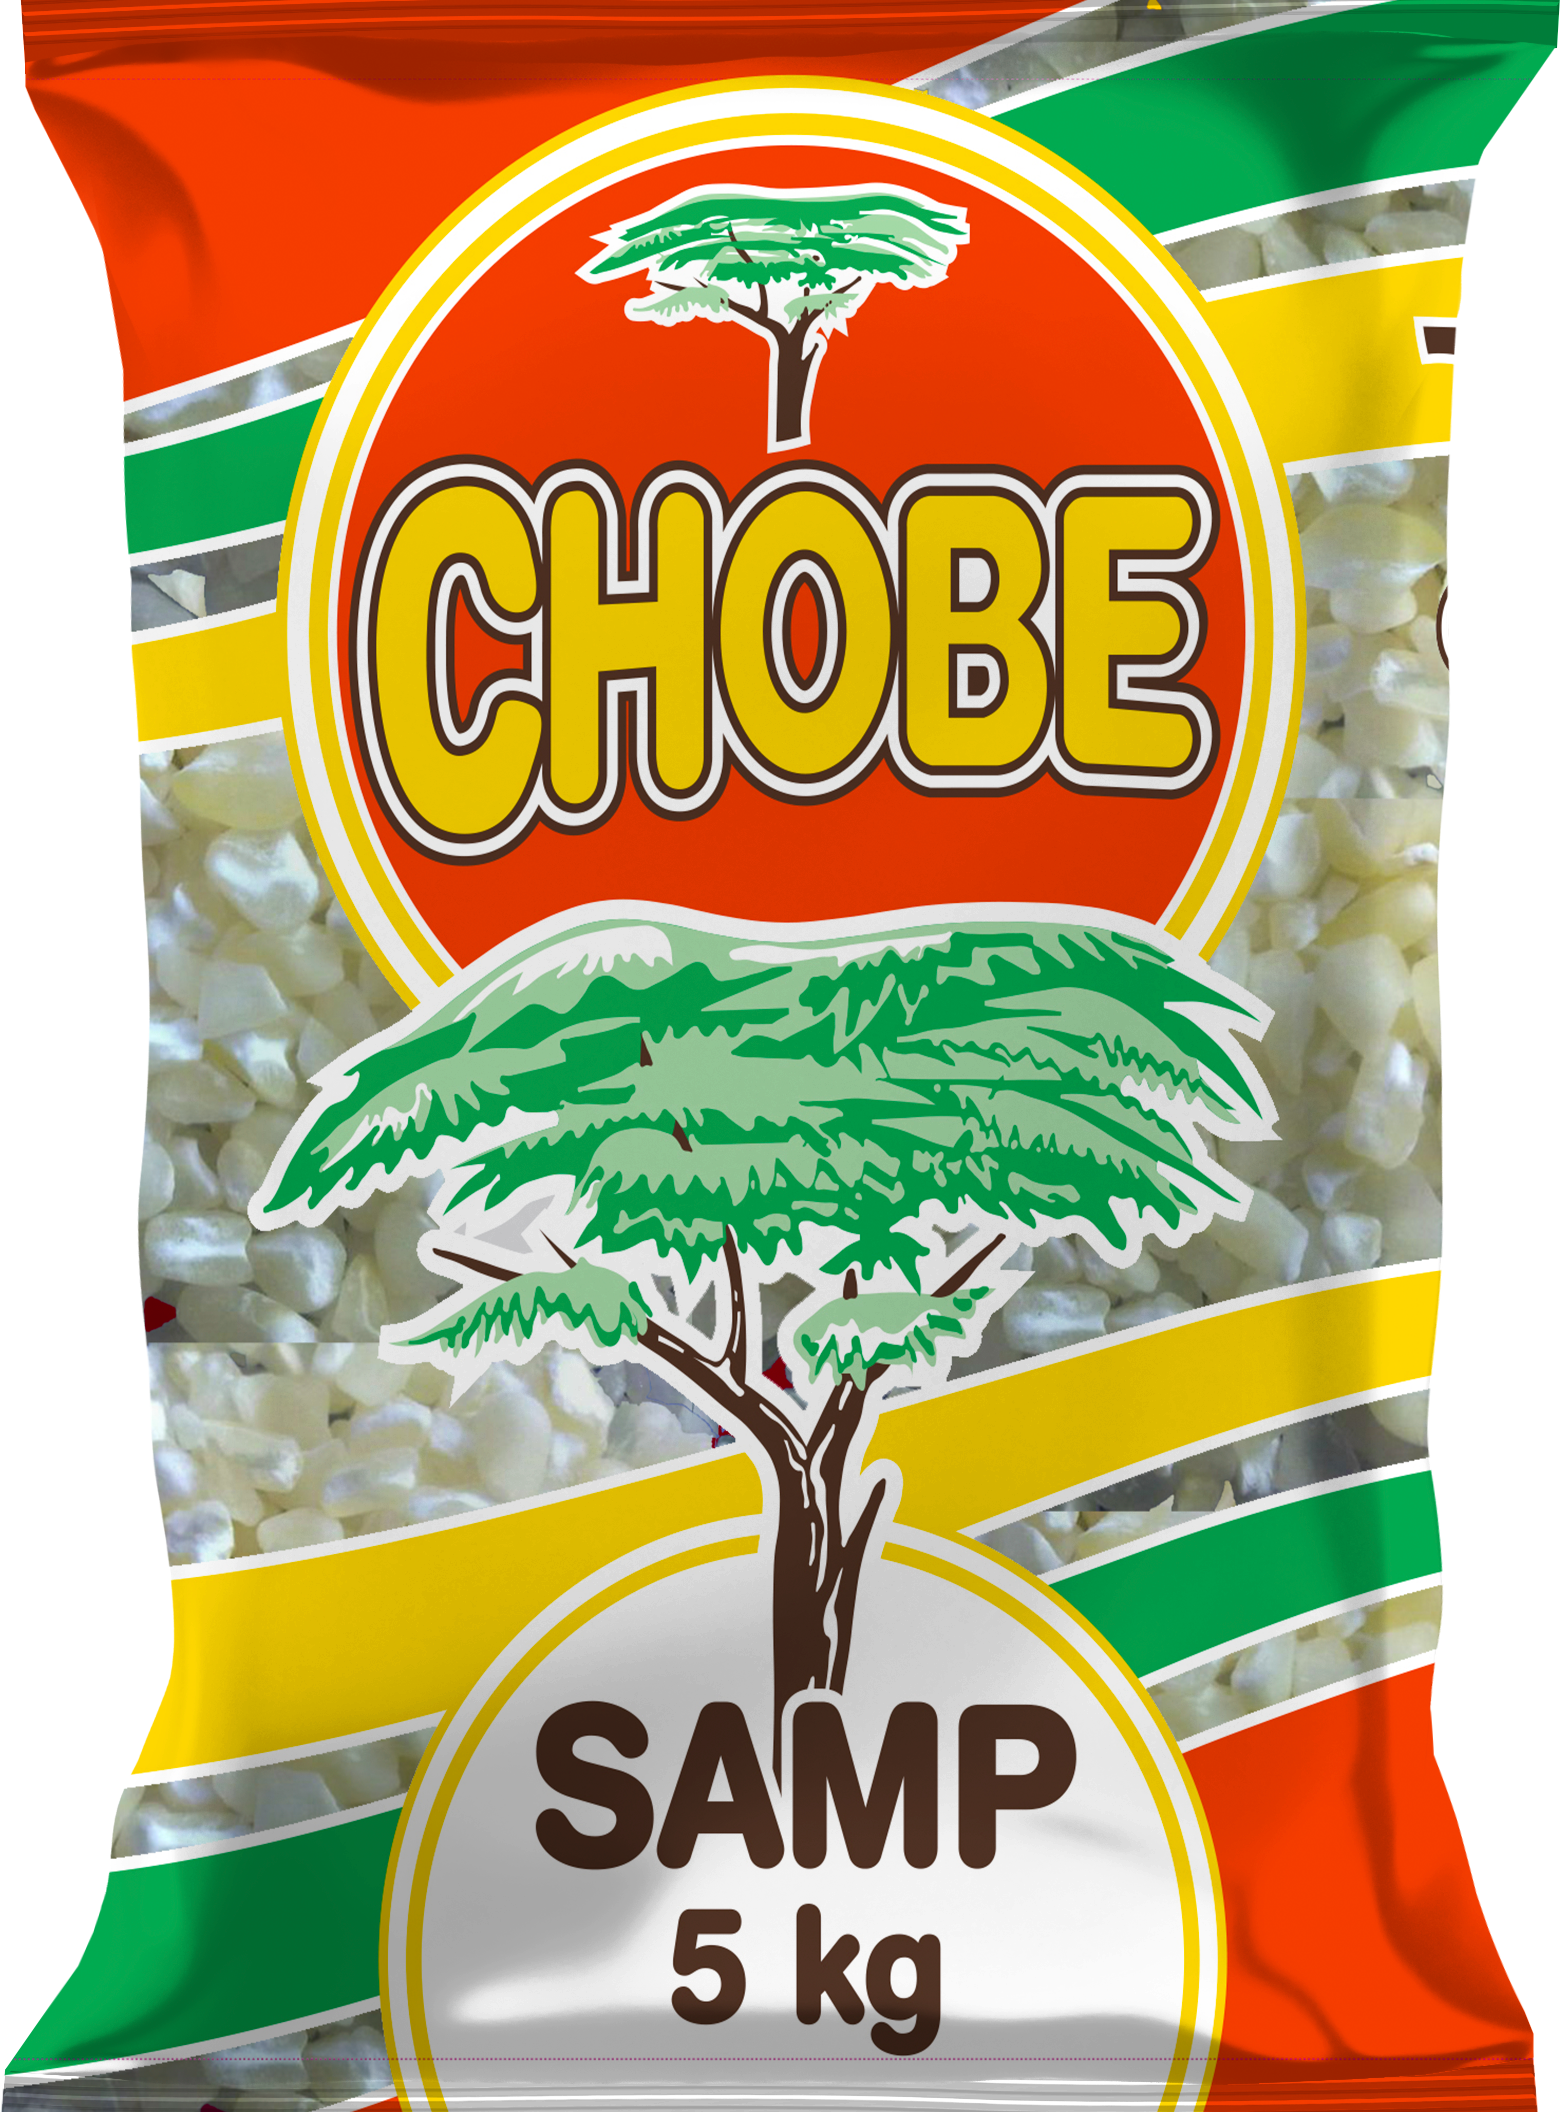 Chobe Samp 50 Kg